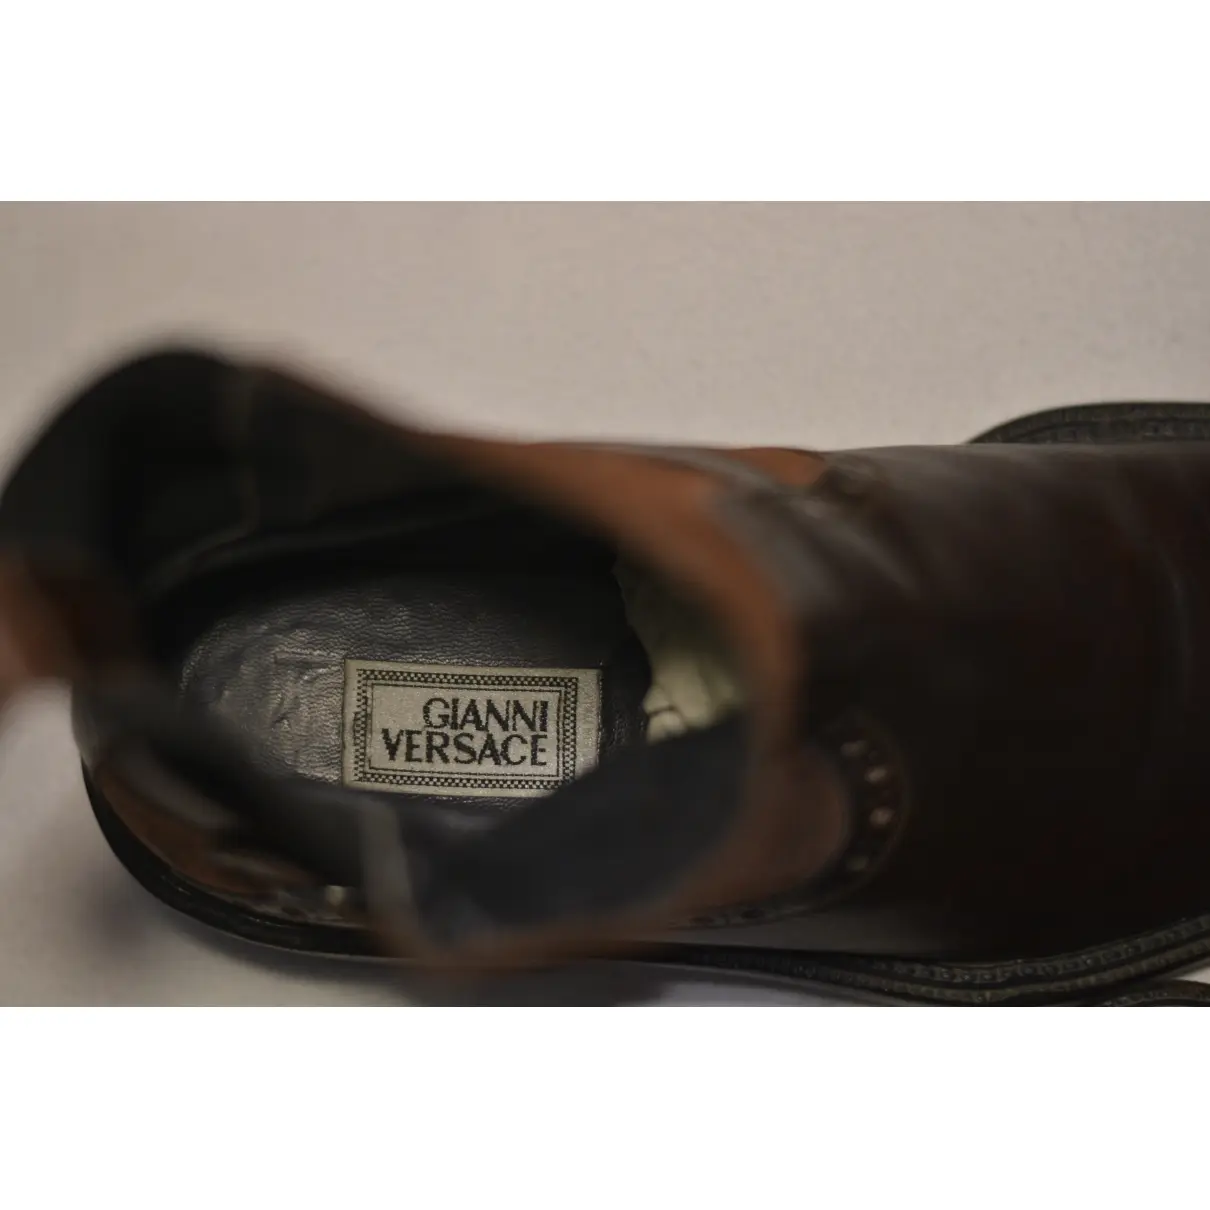 Second hand Shoes Men - Vintage